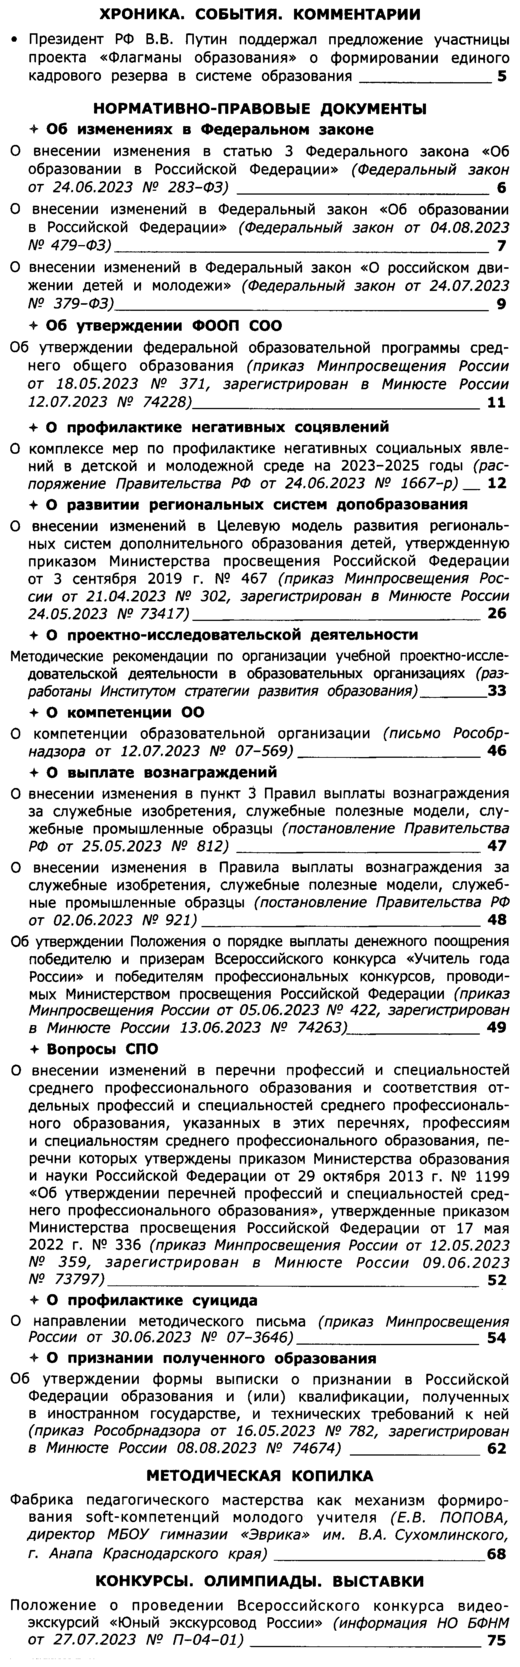 Вестник образования России 2023-17.png